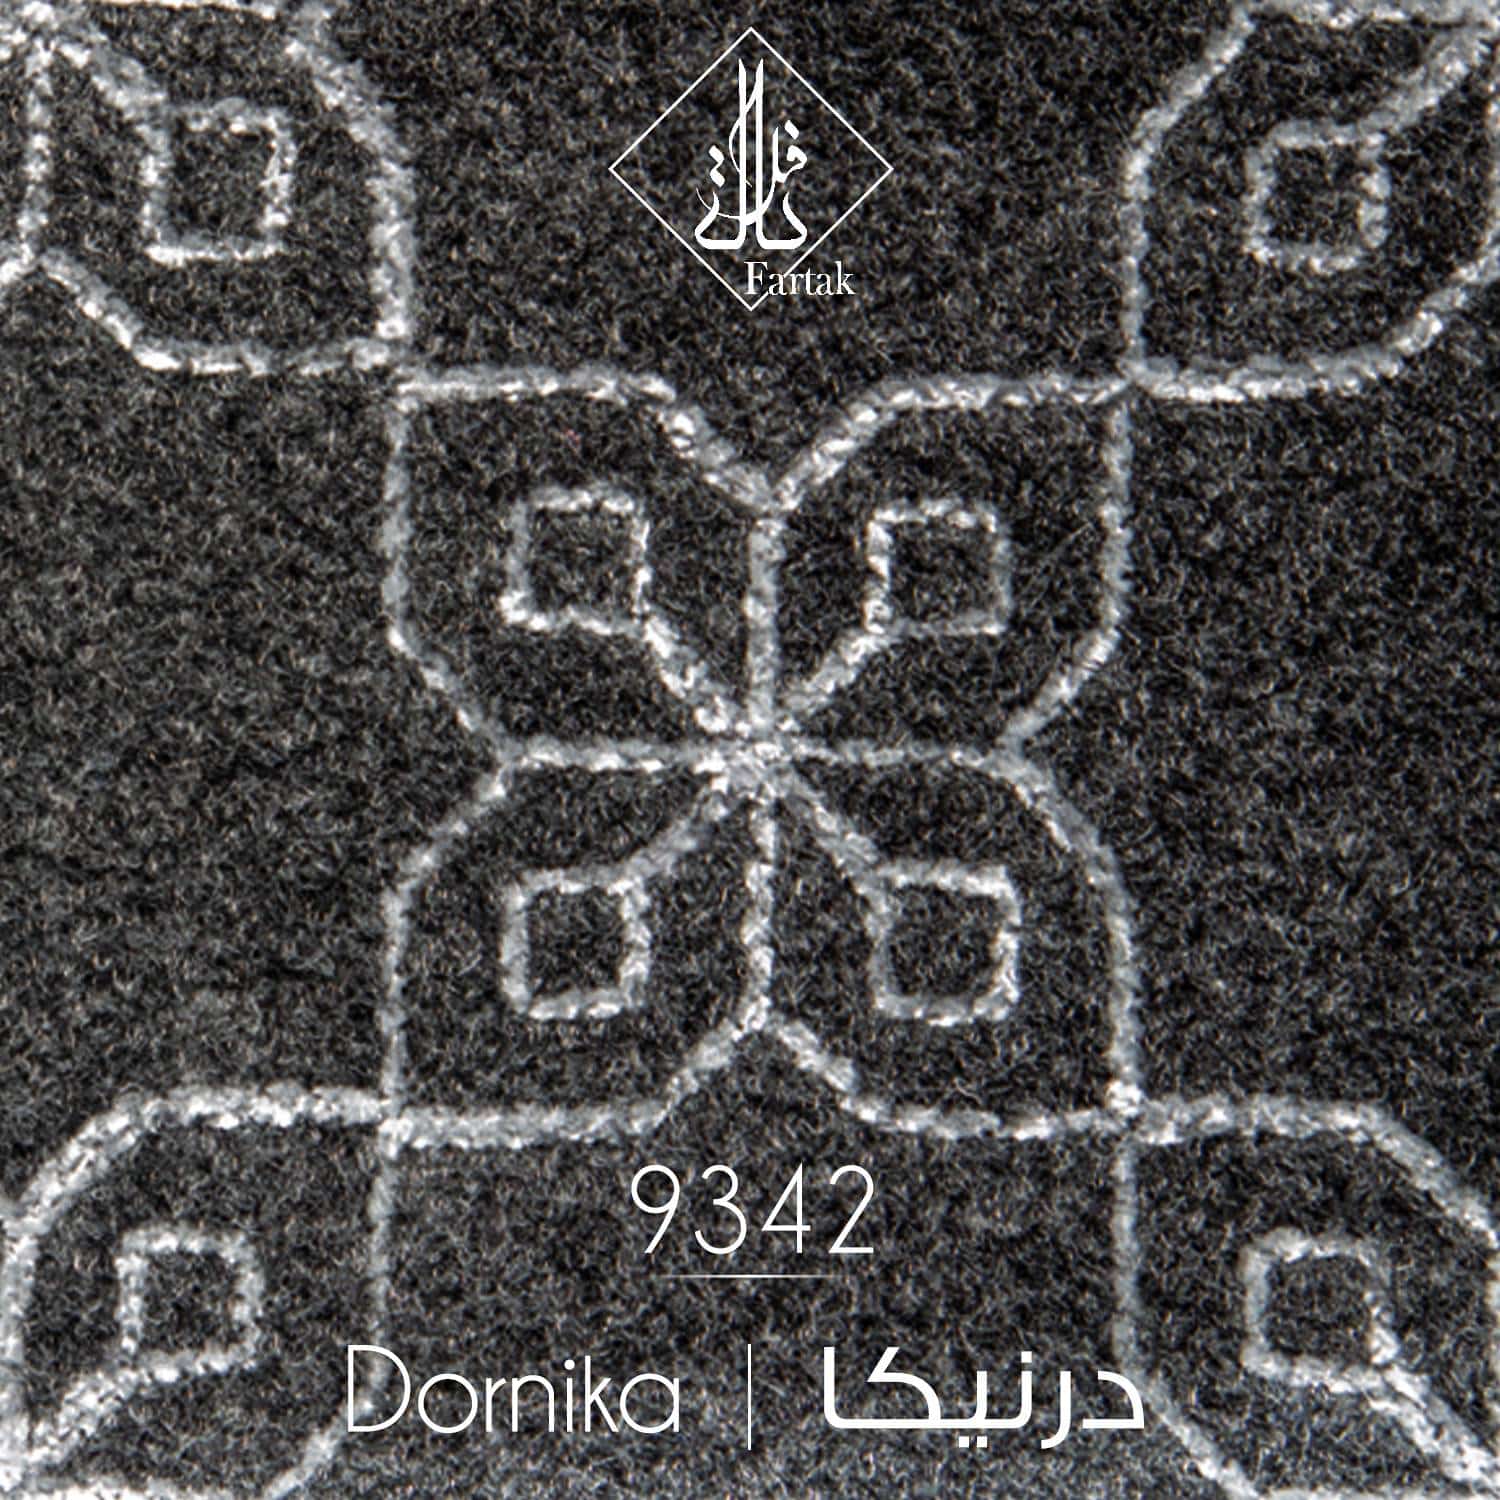 موکت ظریف مصور طرح درنیکا کد ۹۳4۲